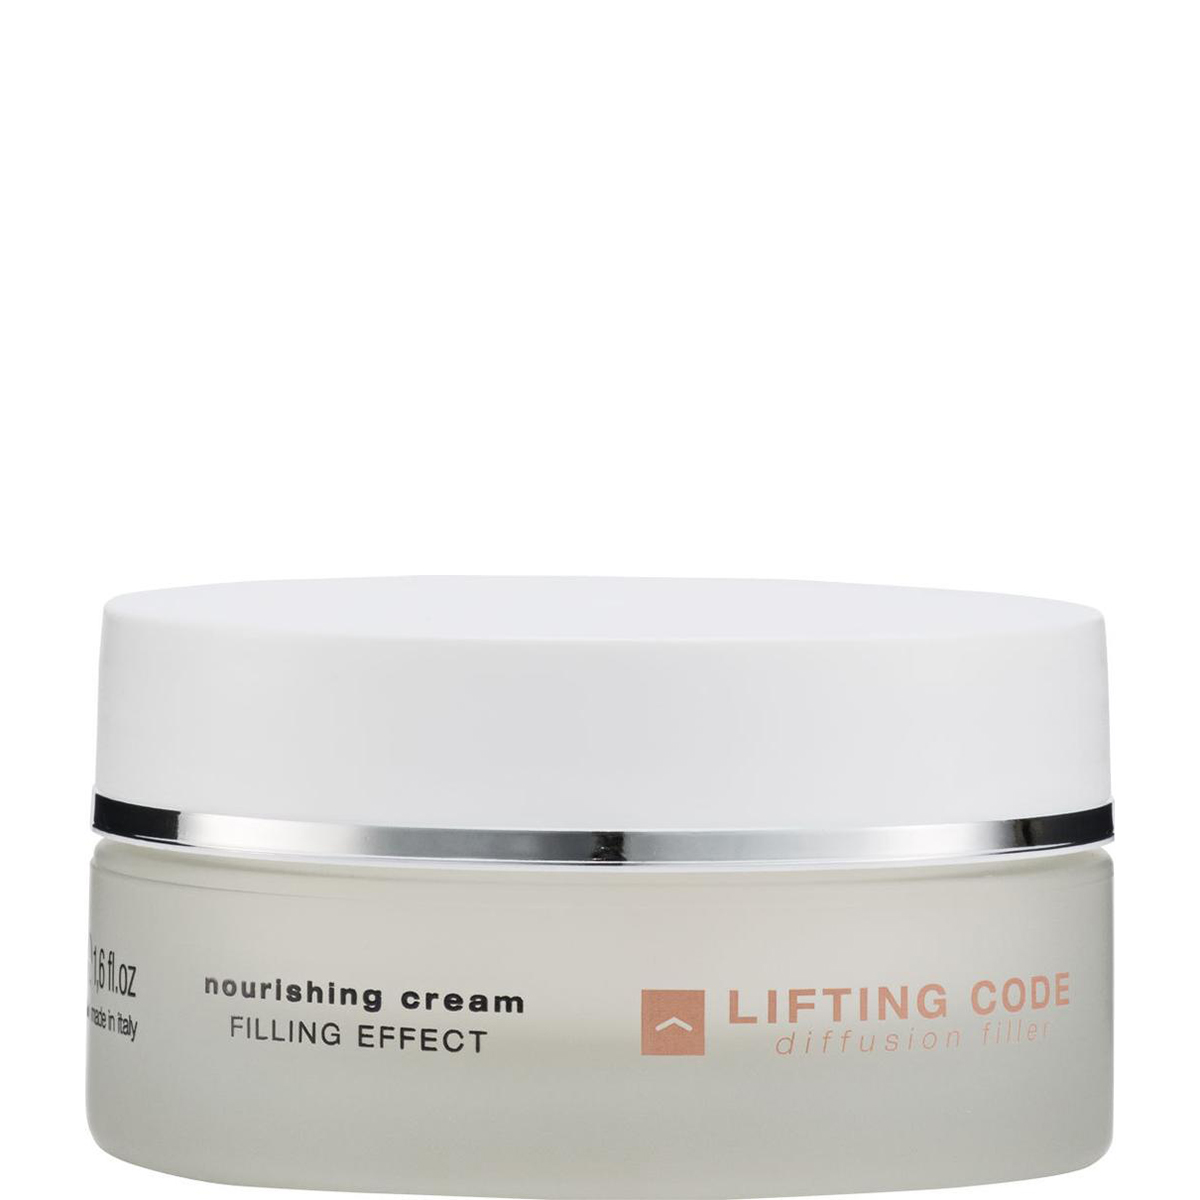 Bioline Lifting Code Nourishing Cream